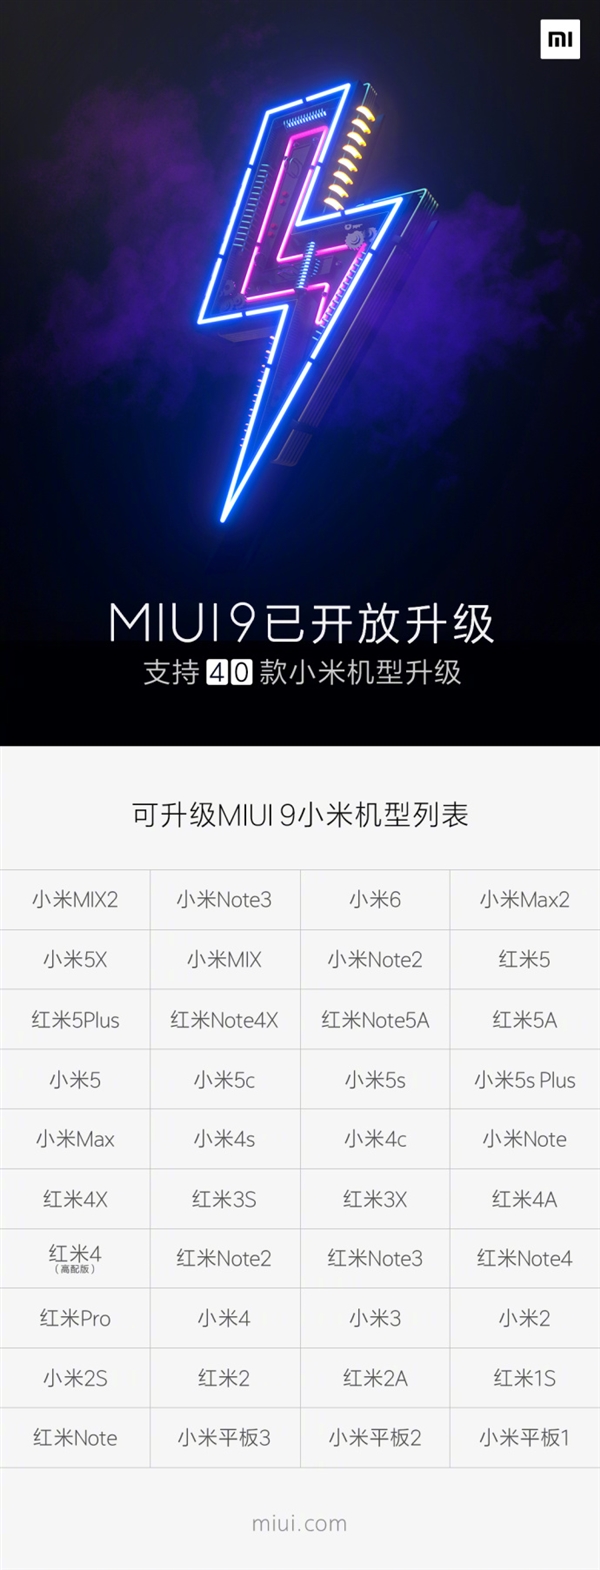 MIUI9完成40款机型升级推送：MIUI 10要来了！